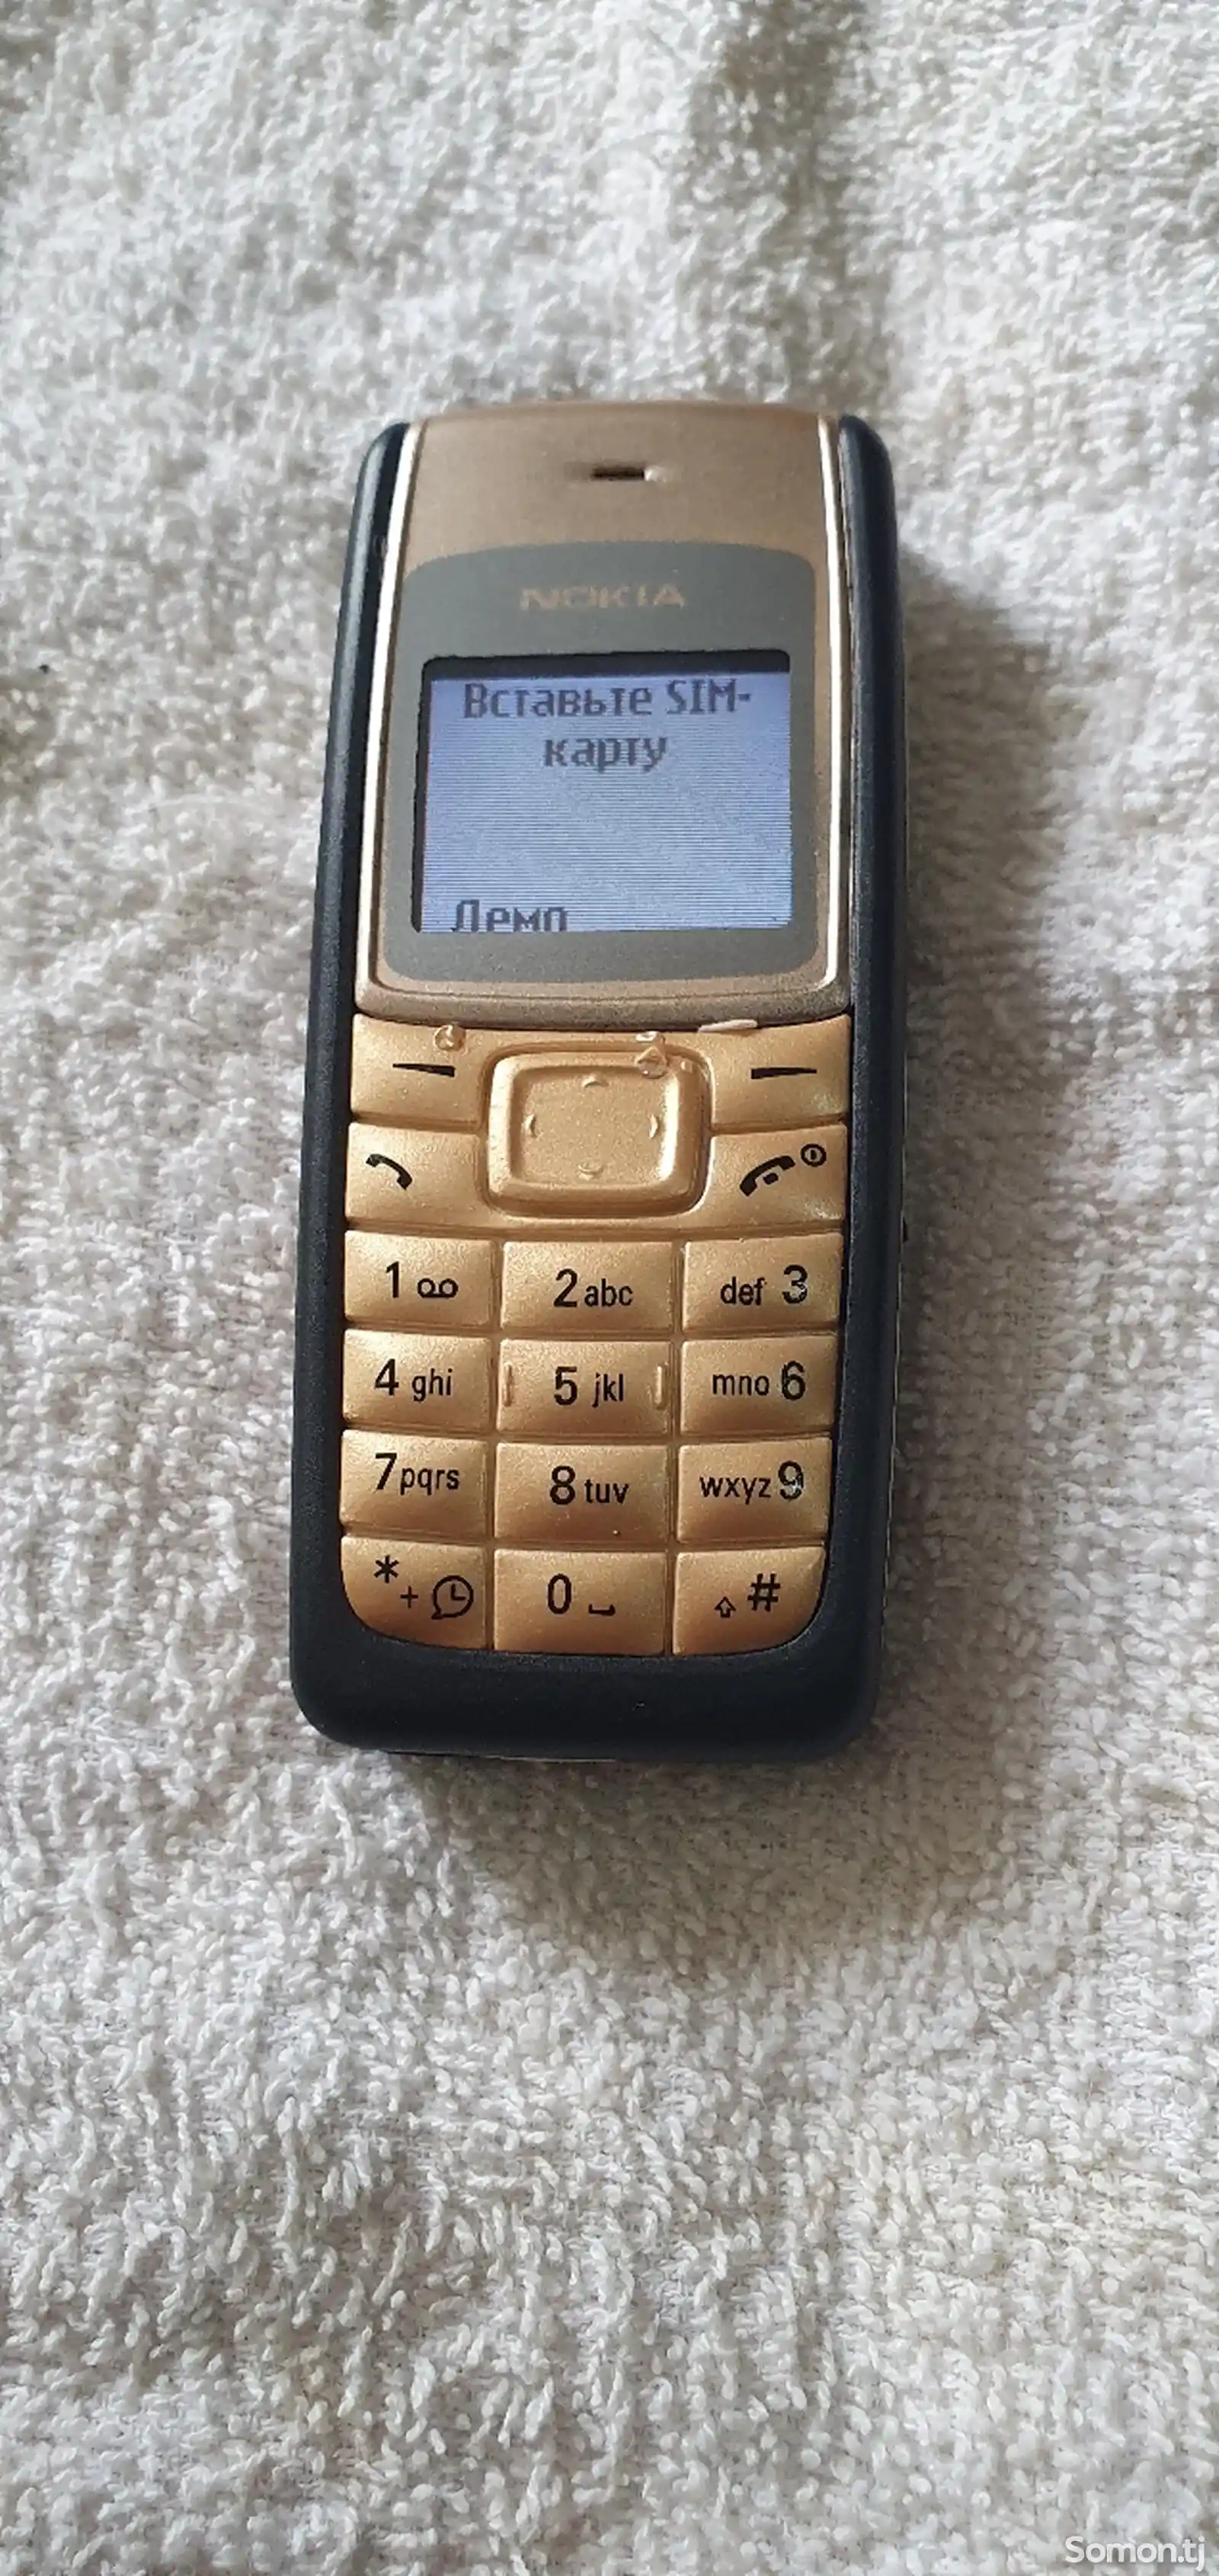 Nokia 1110-3